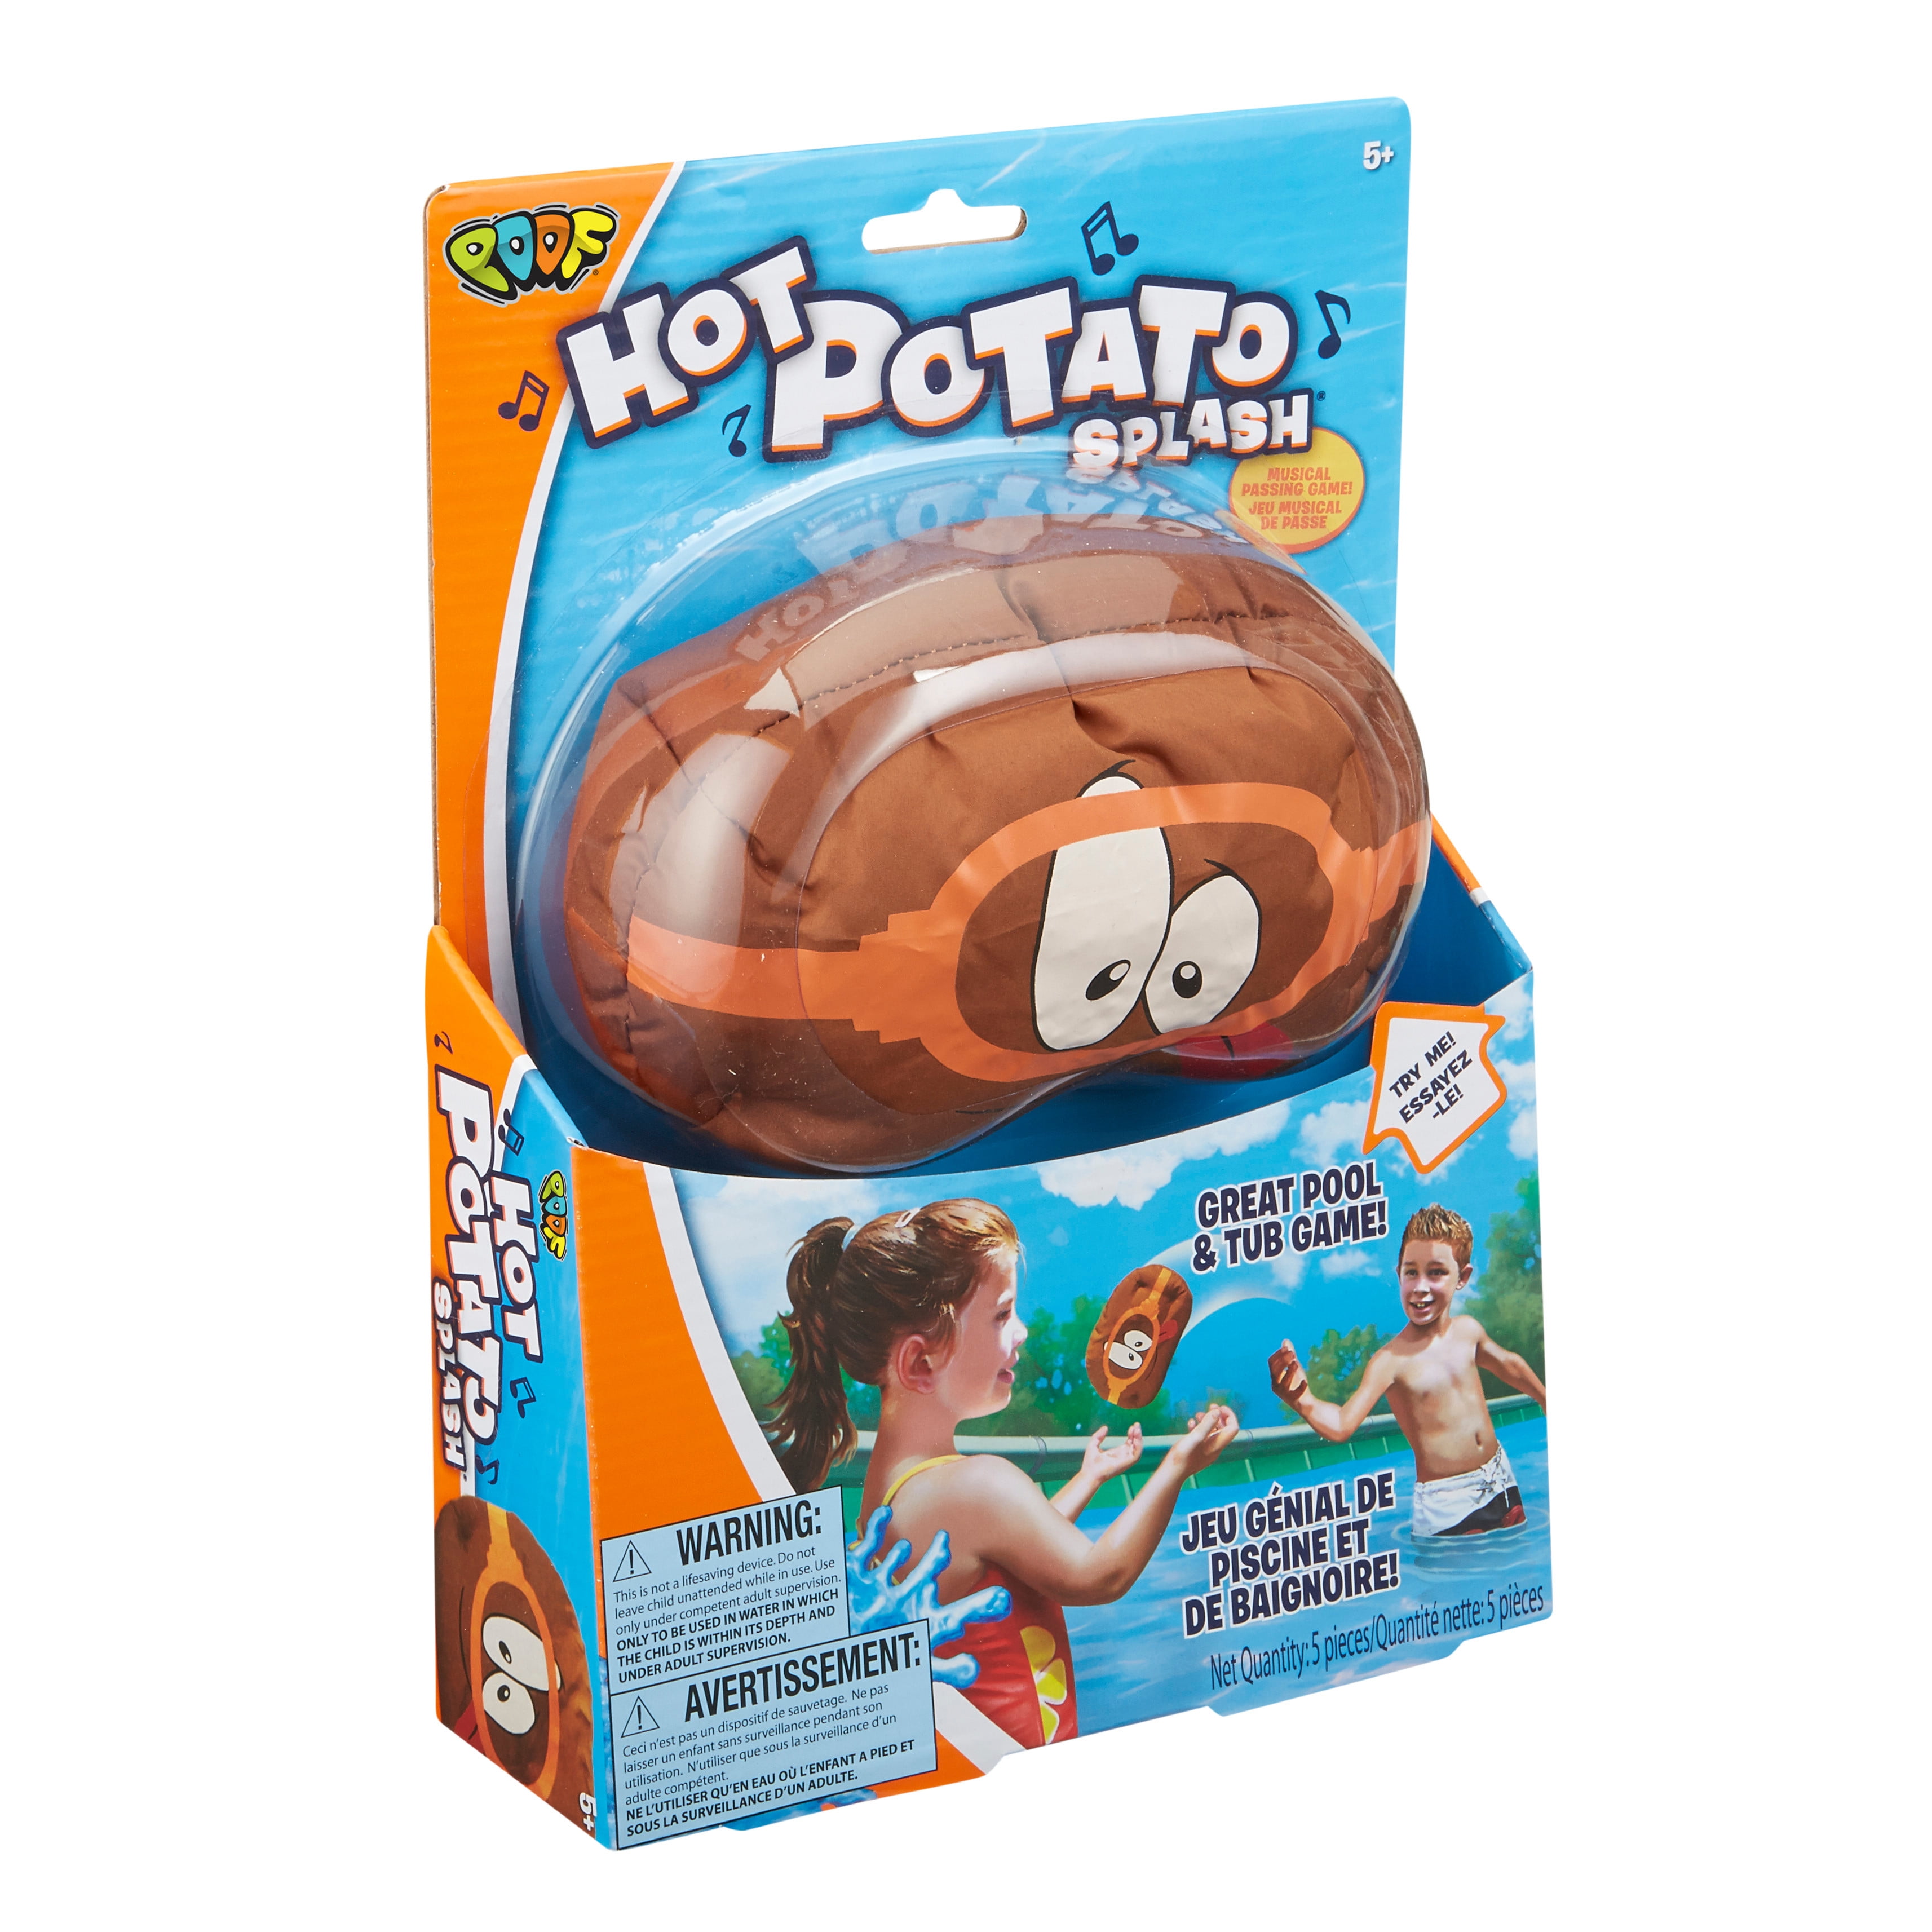 Splash Potato Water Toy Game 